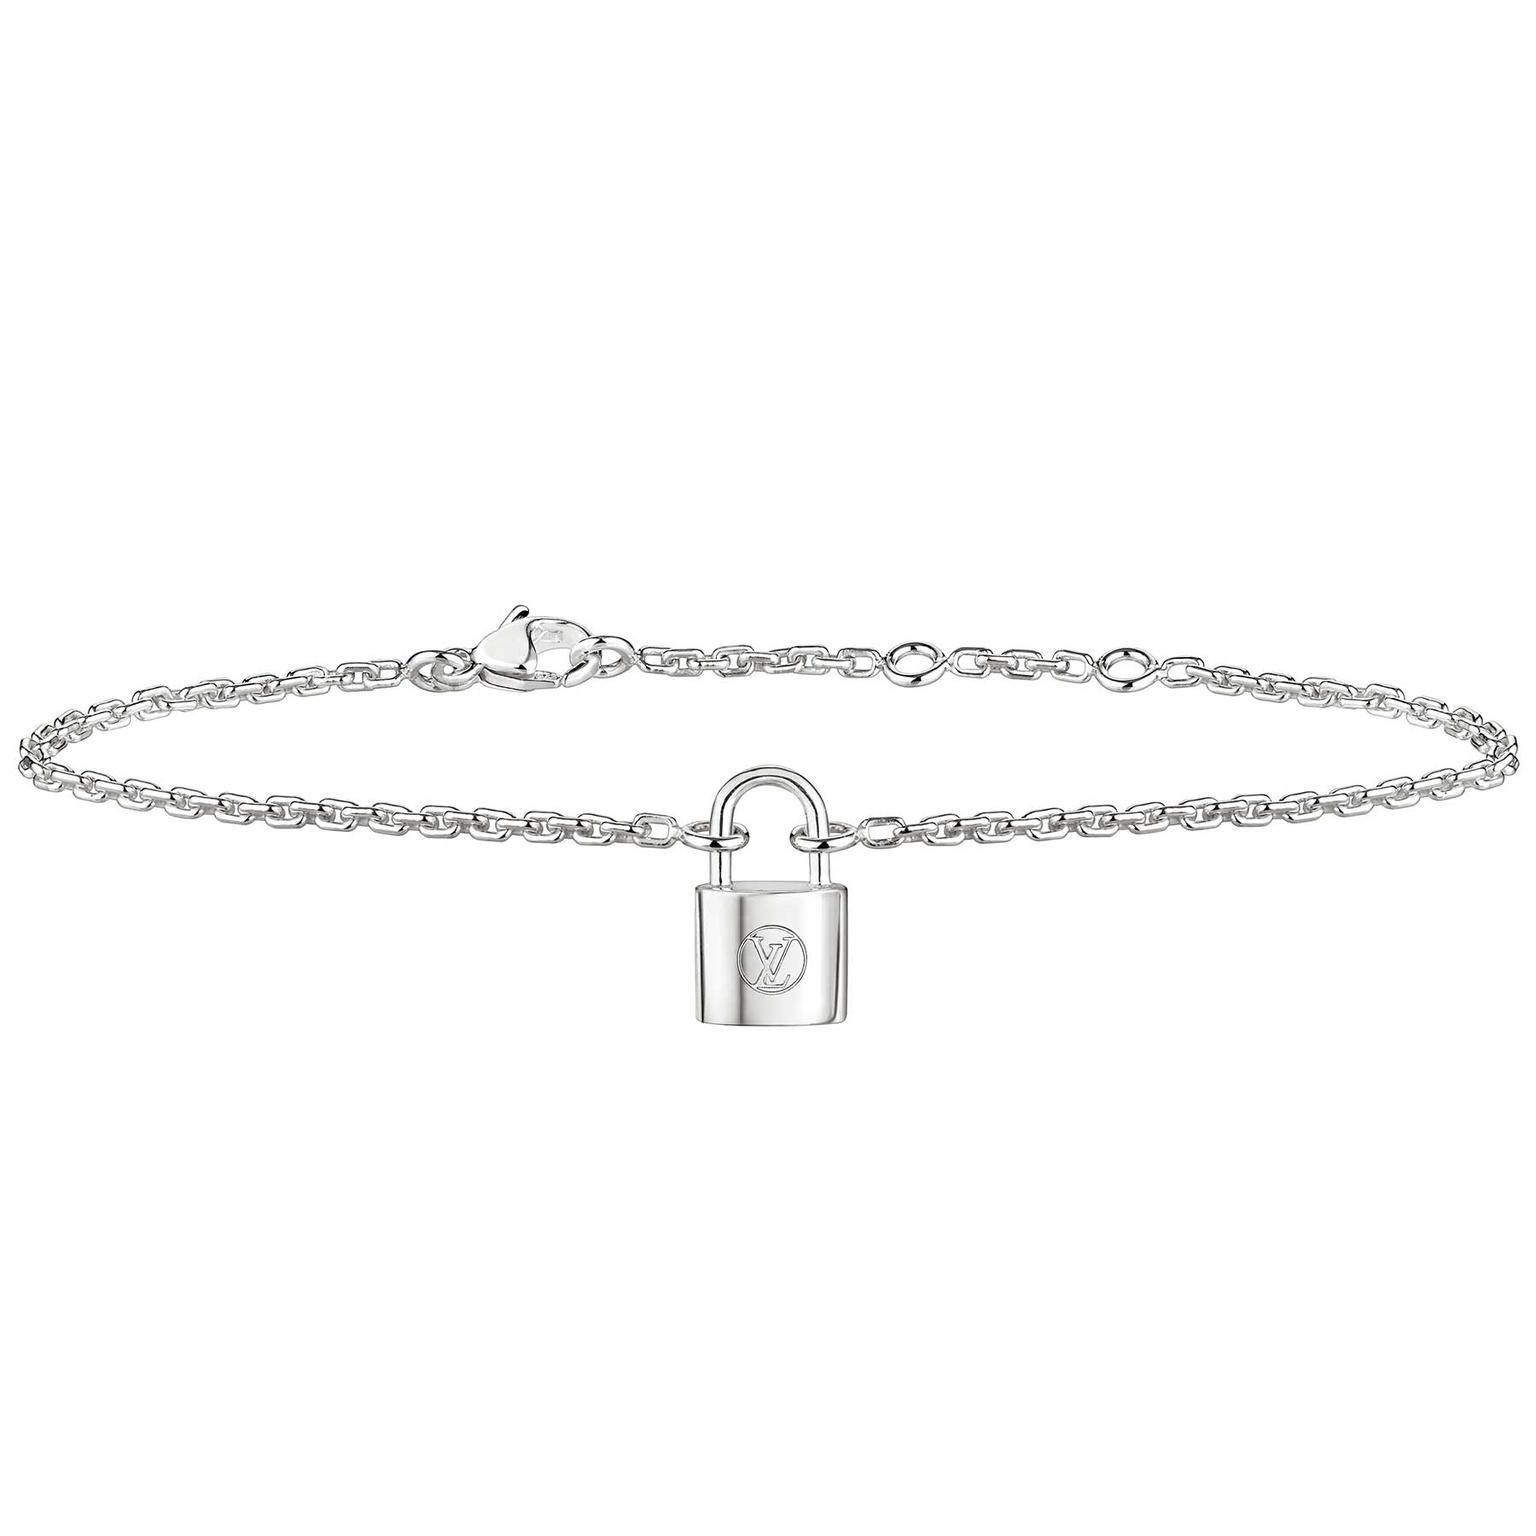 Louis Vuitton Lockit bracelet in sterling silver